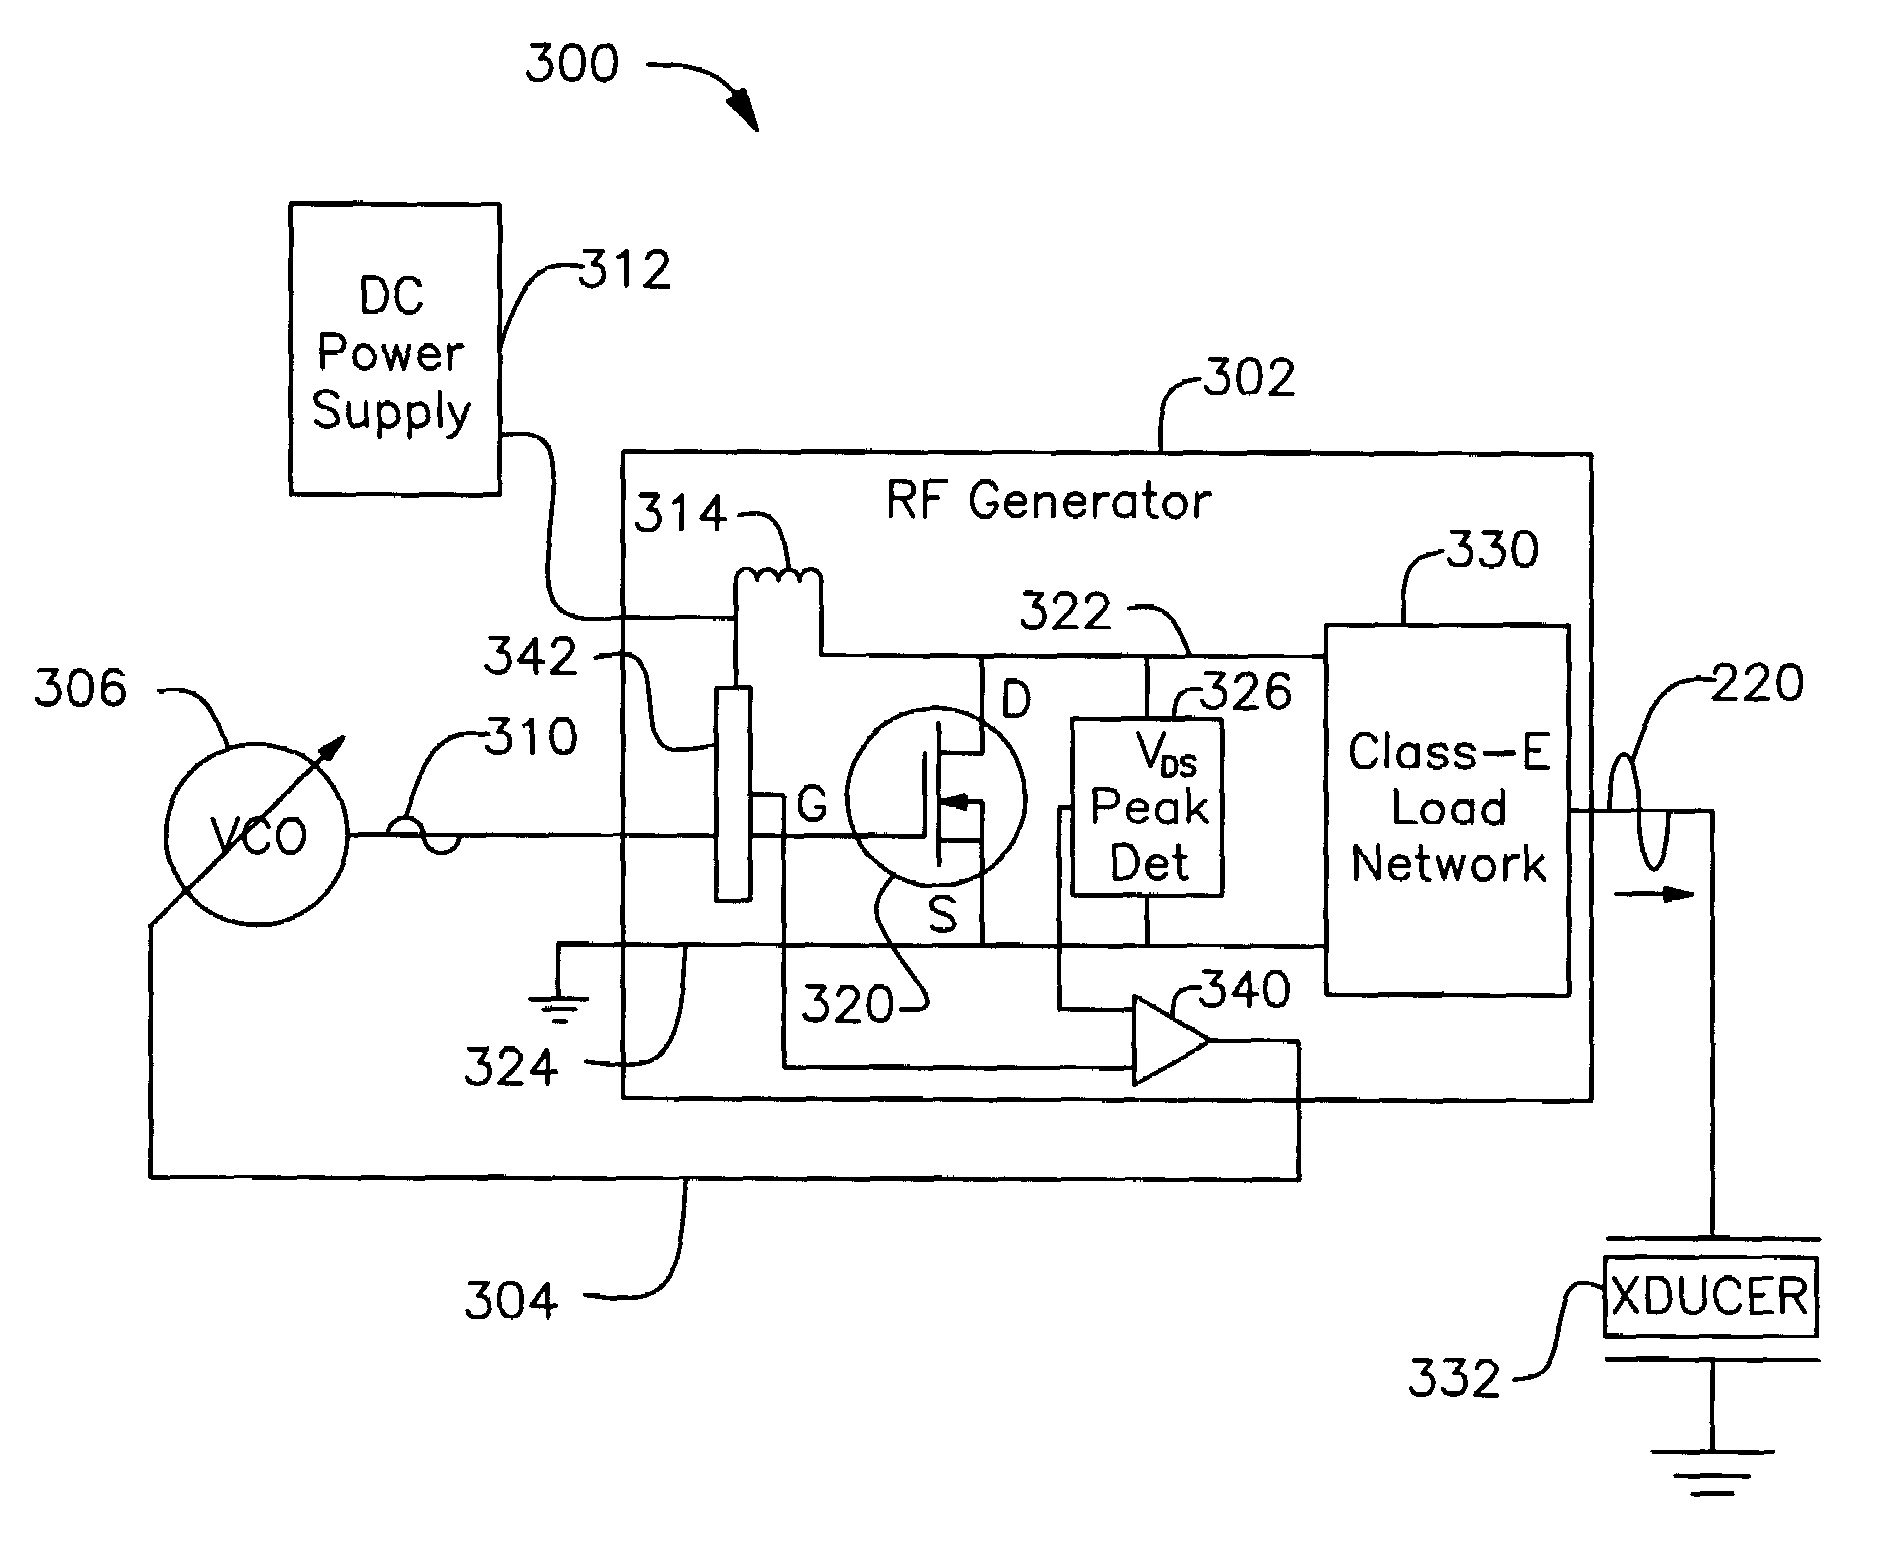 Phase control of megasonic RF generator for optimum operation